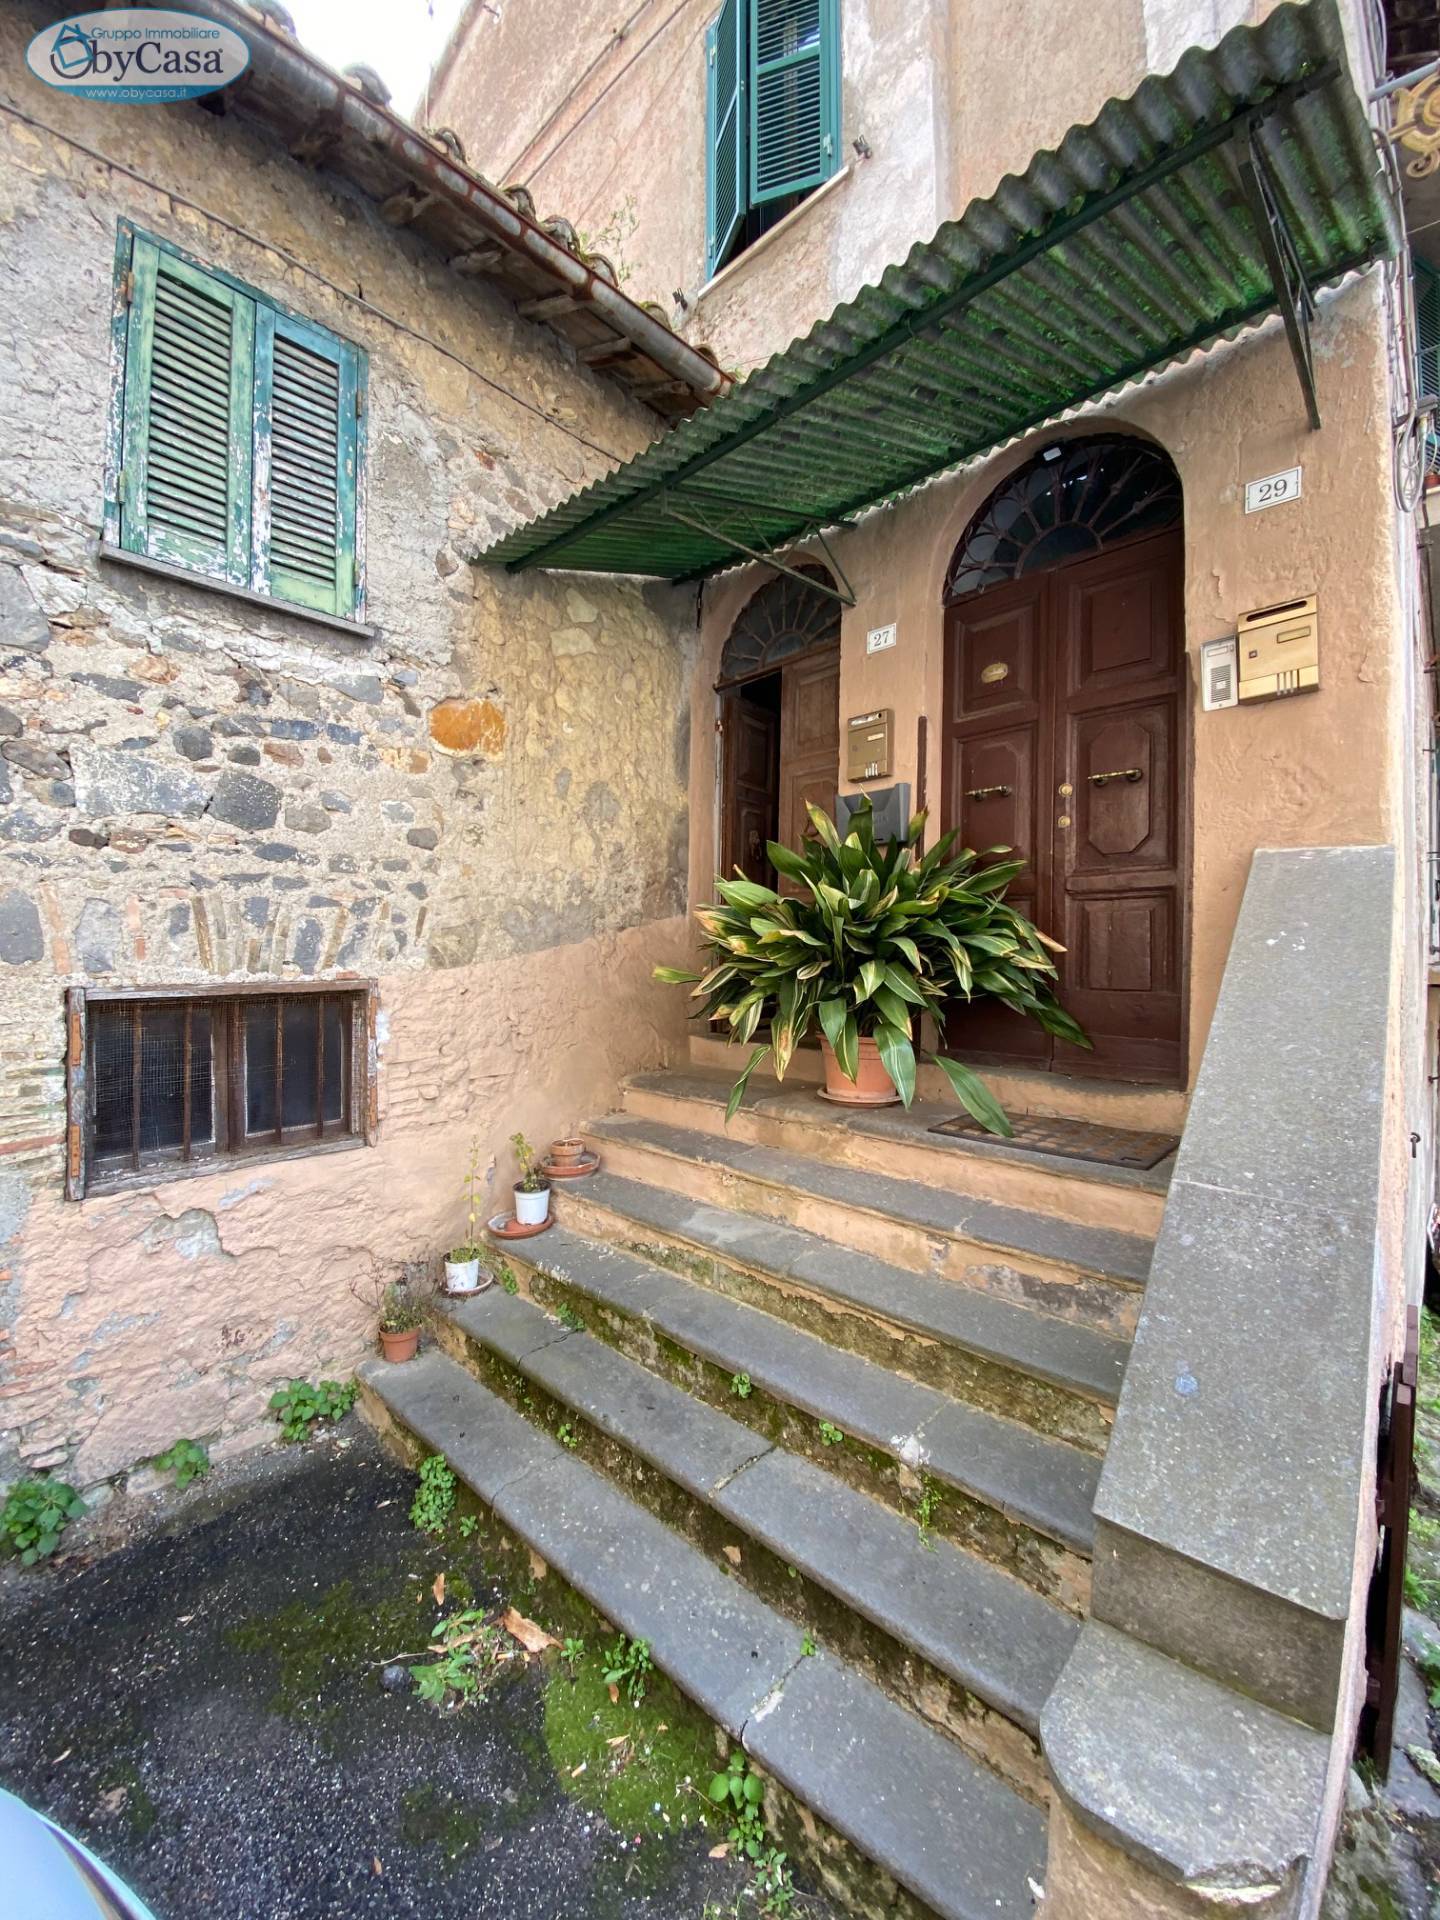 Appartamento in vendita a Bracciano, 3 locali, zona Località: semicentrale, prezzo € 90.000 | CambioCasa.it